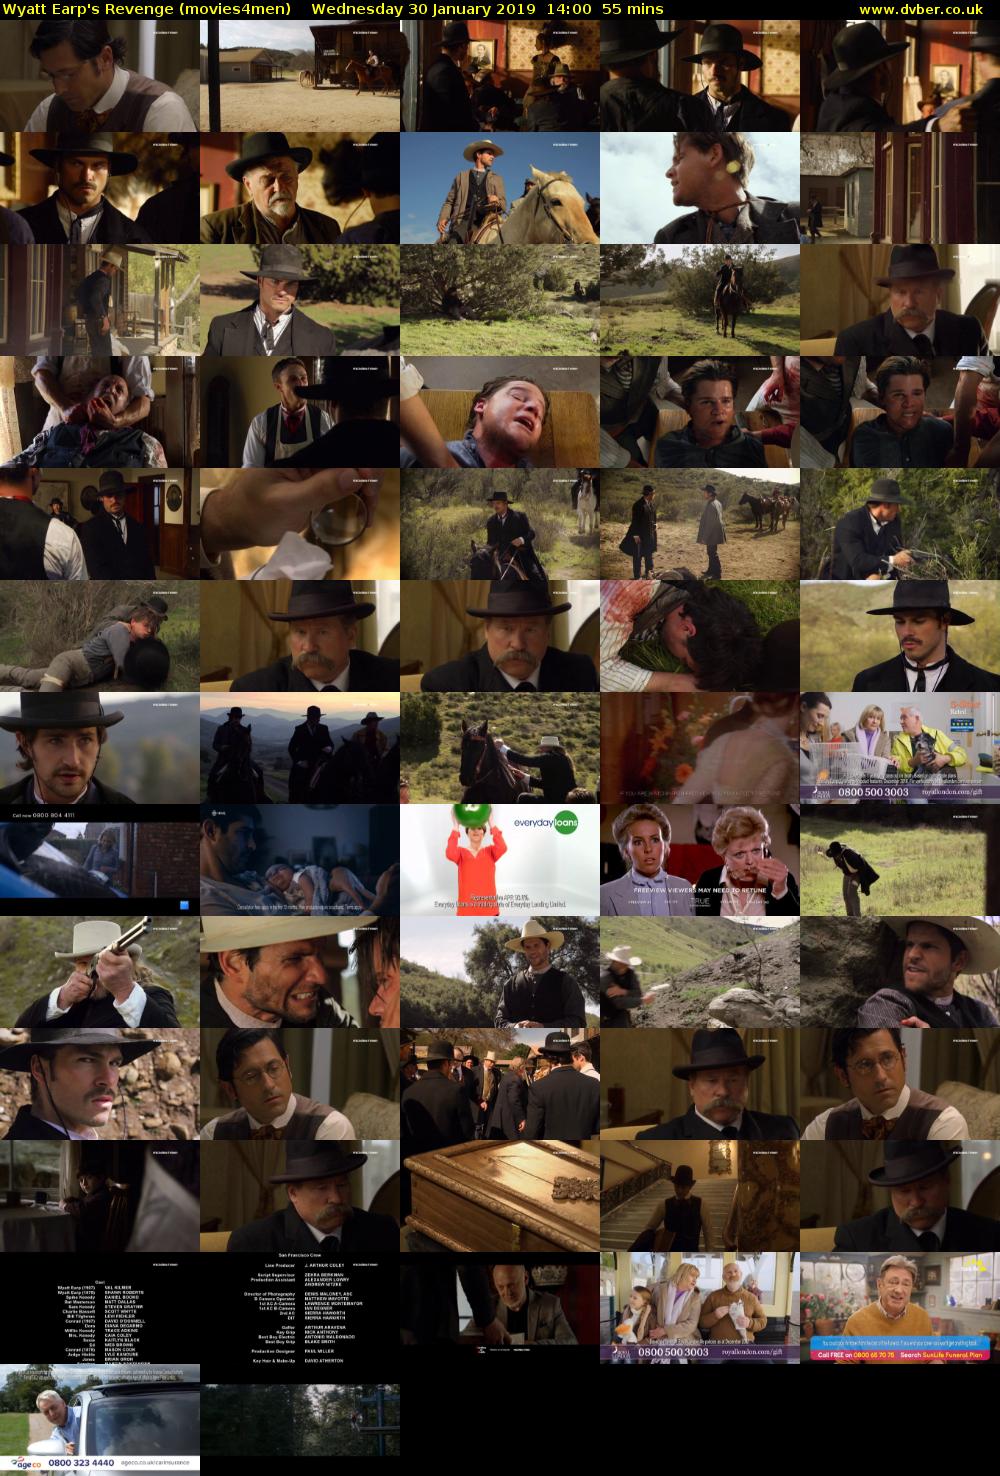 Wyatt Earp's Revenge (movies4men) Wednesday 30 January 2019 14:00 - 14:55